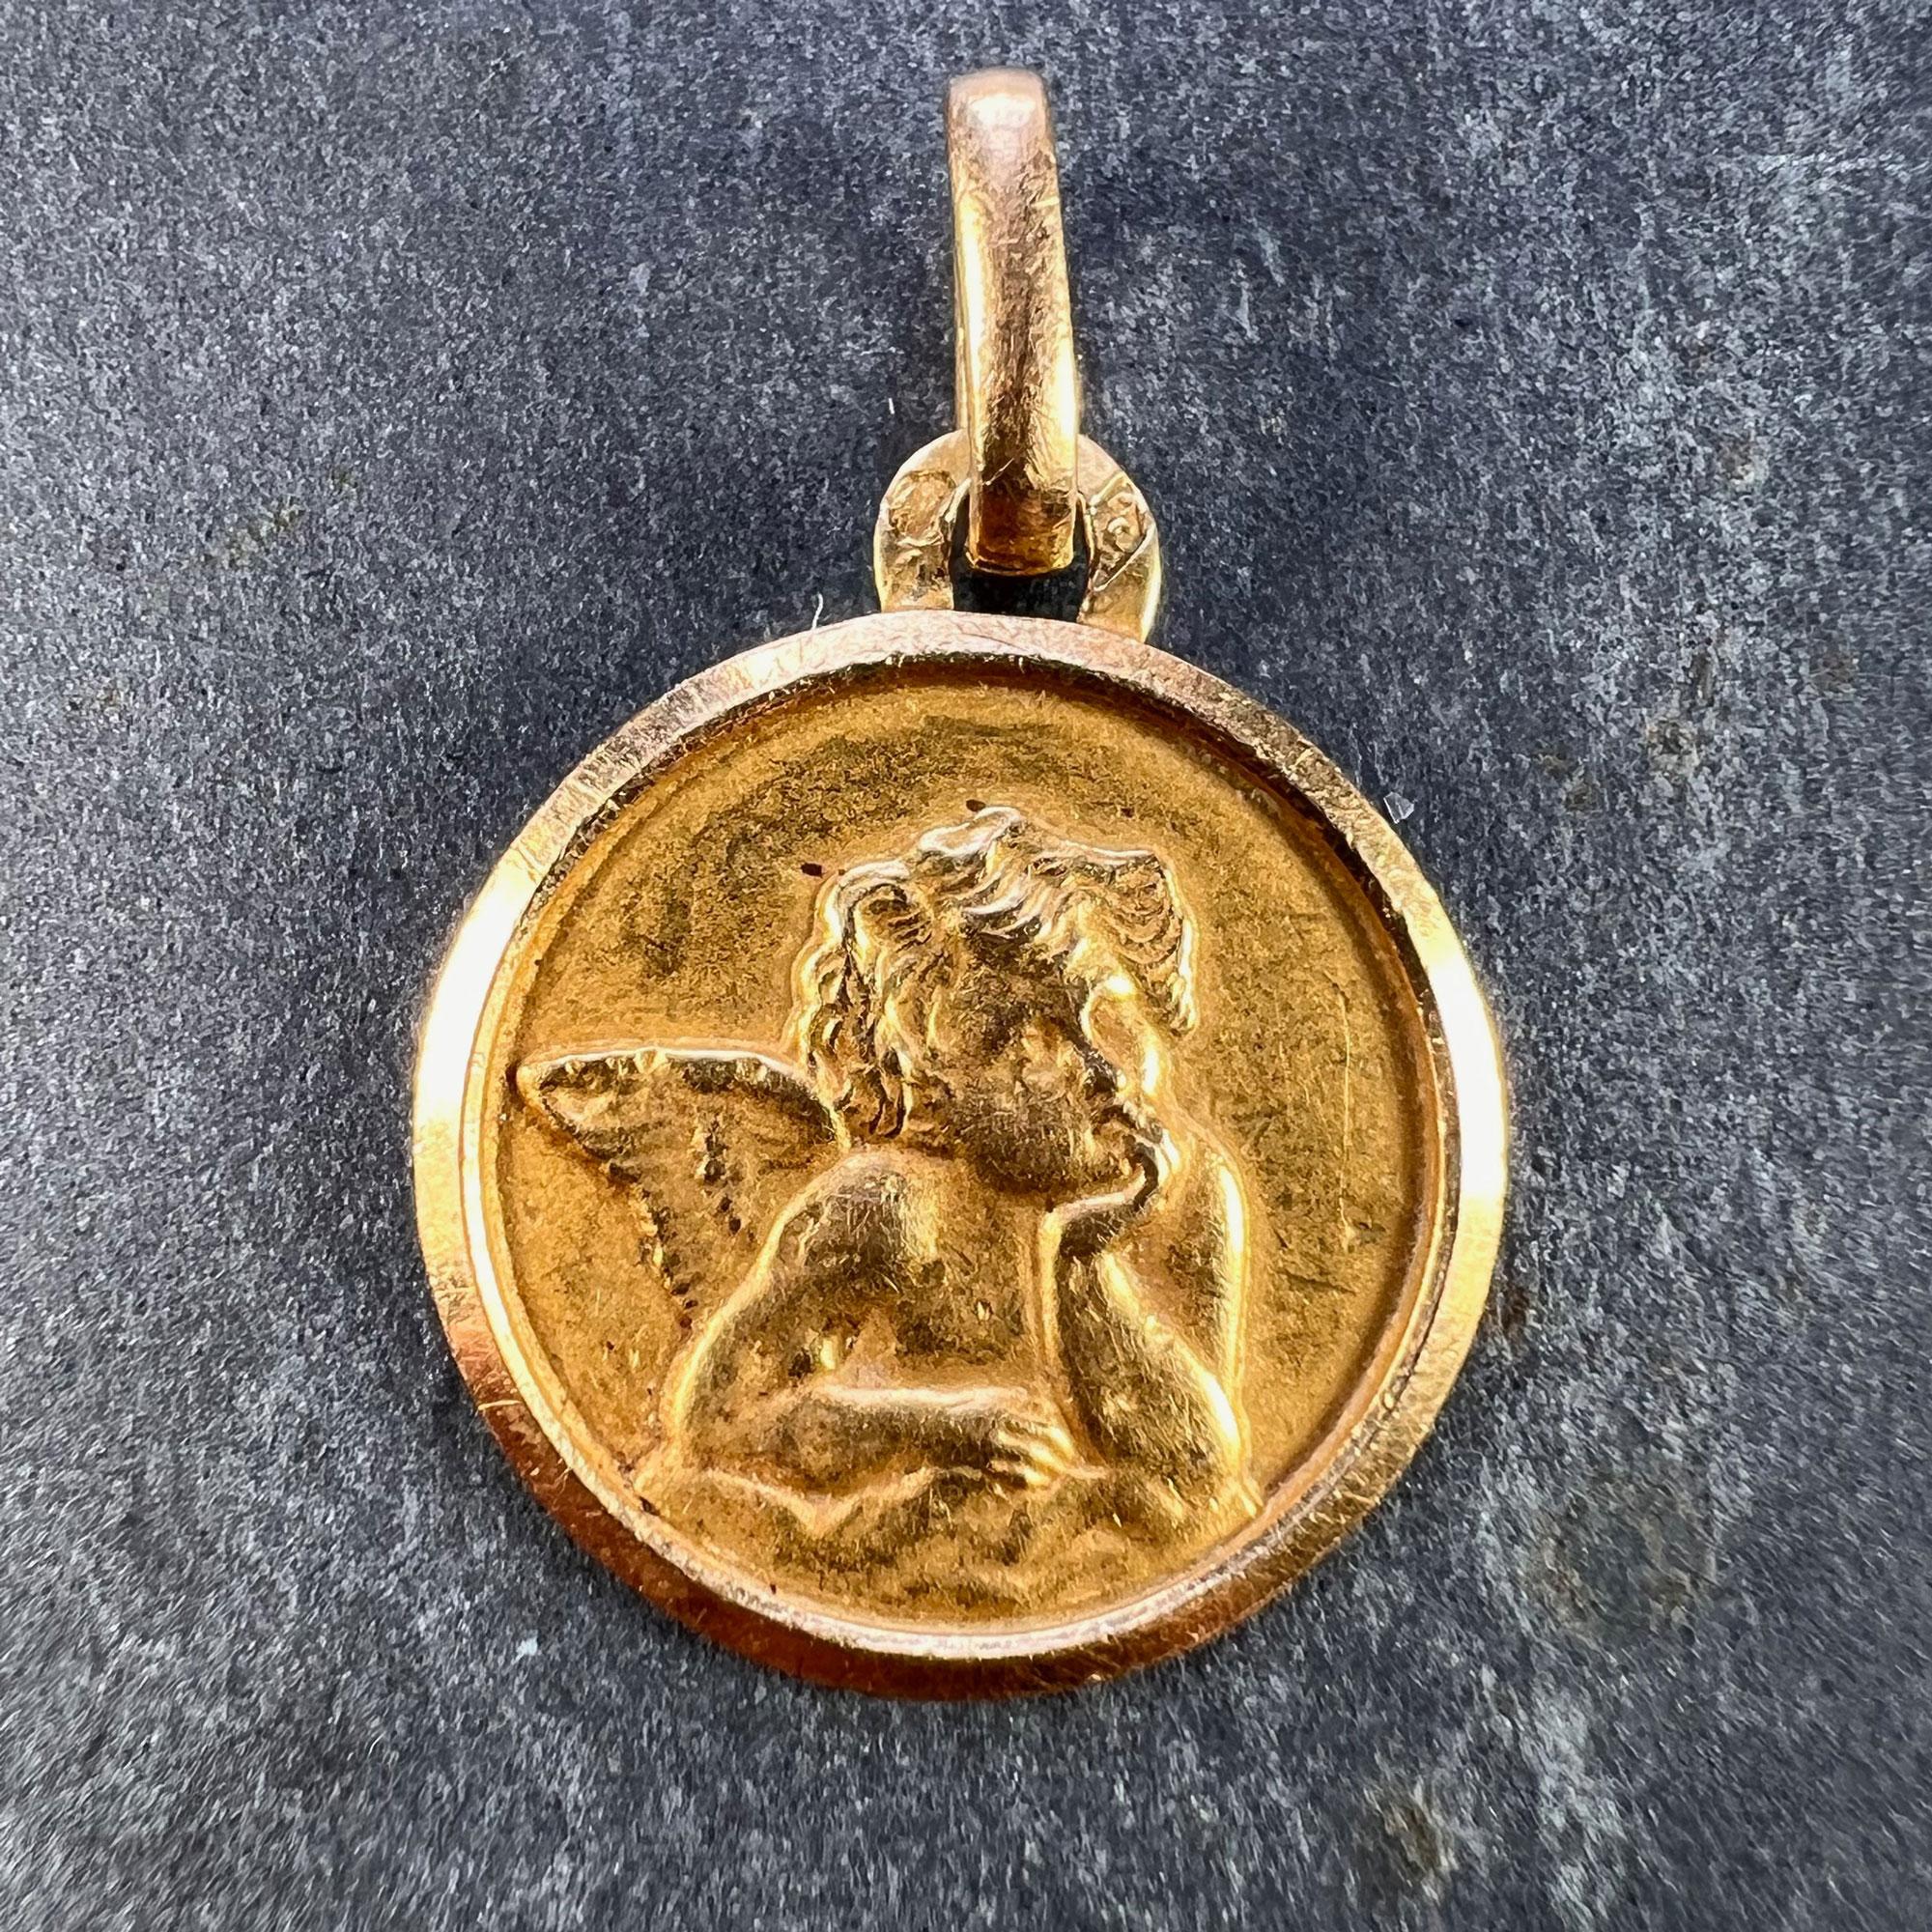 Pendentif à breloques français en or jaune 18 carats (18K) conçu comme une médaille représentant l'angelot de Rafael dans un cadre en relief. La date du 1-9-66 est gravée au verso. Estampillé de la marque de l'aigle pour l'or 18 carats et de la